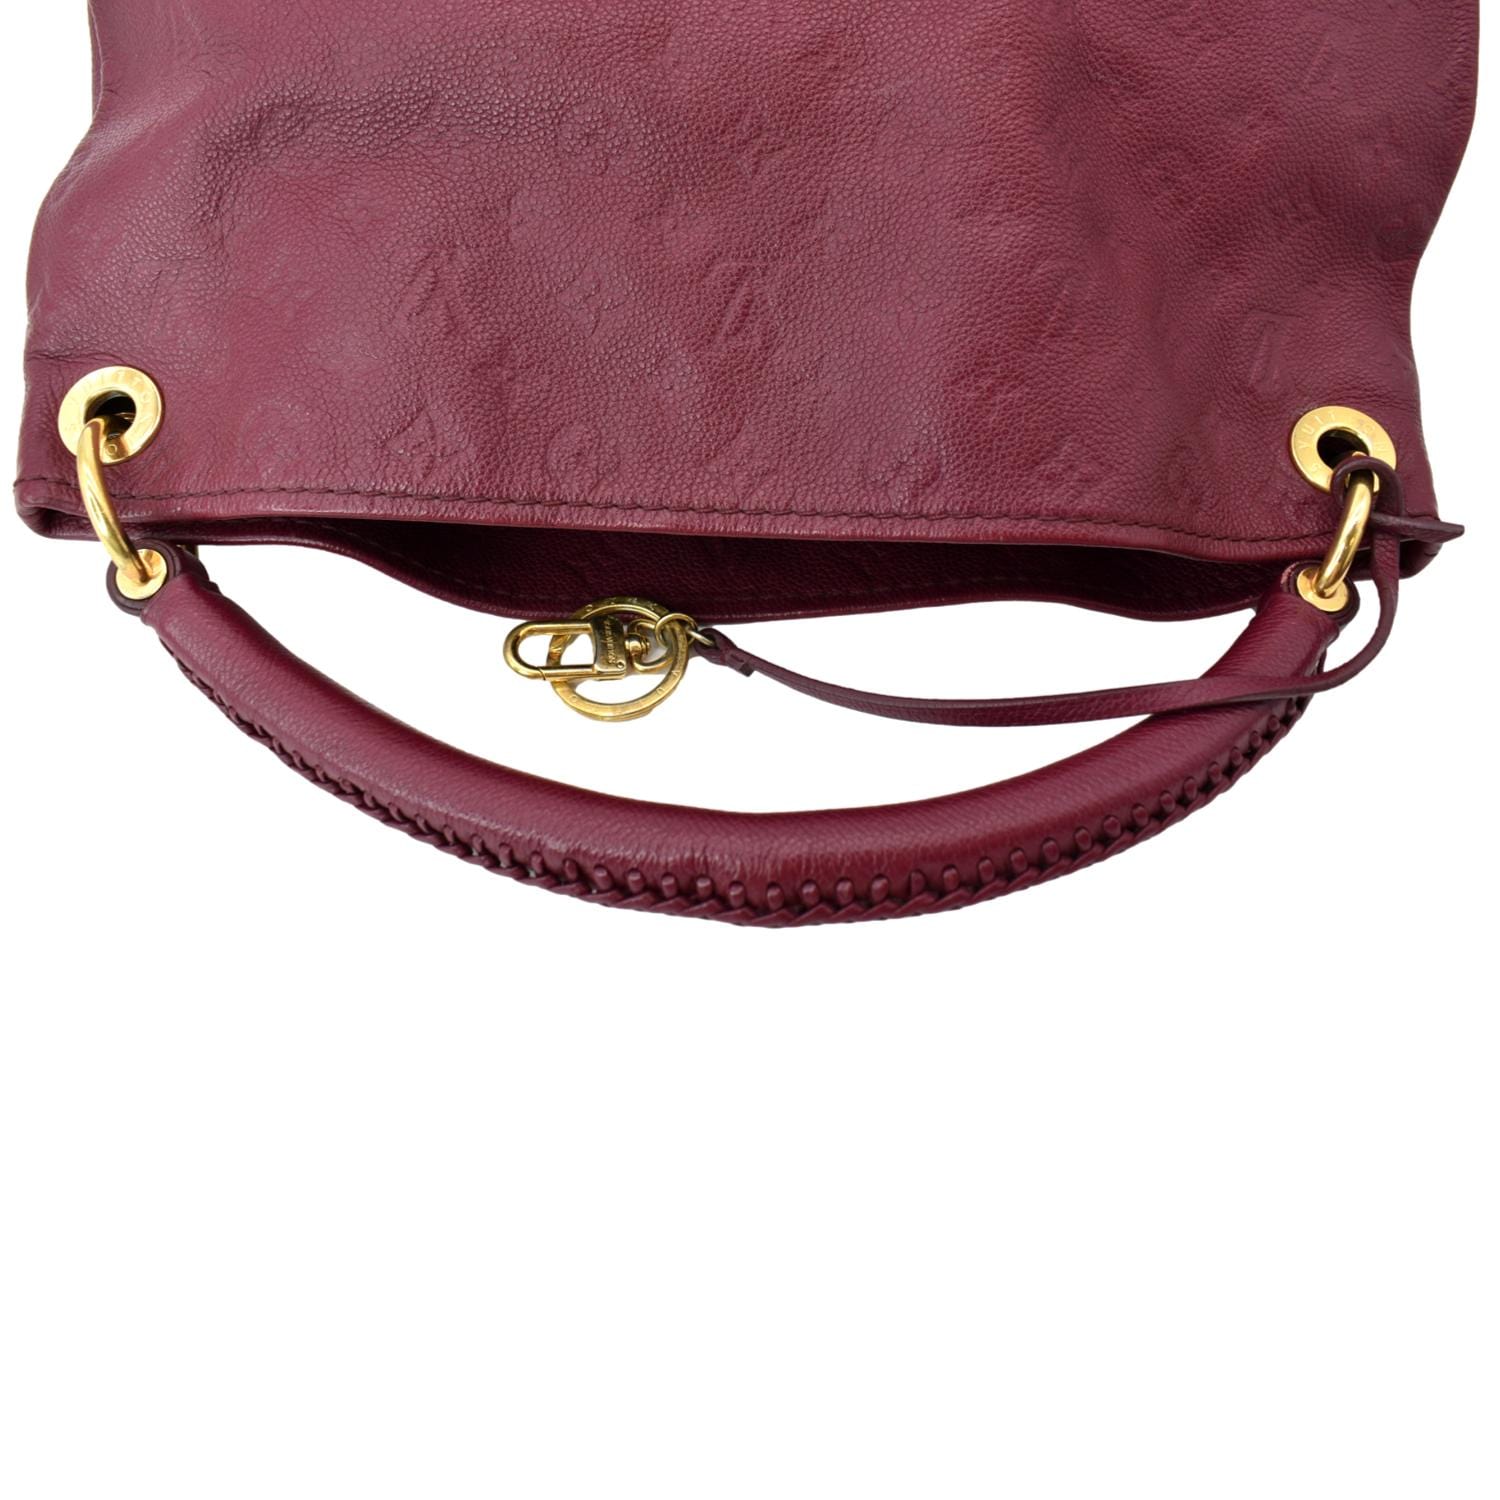 LOUIS VUITTON Artsy Bag in Burgundy Leather - 101294 Dark red ref